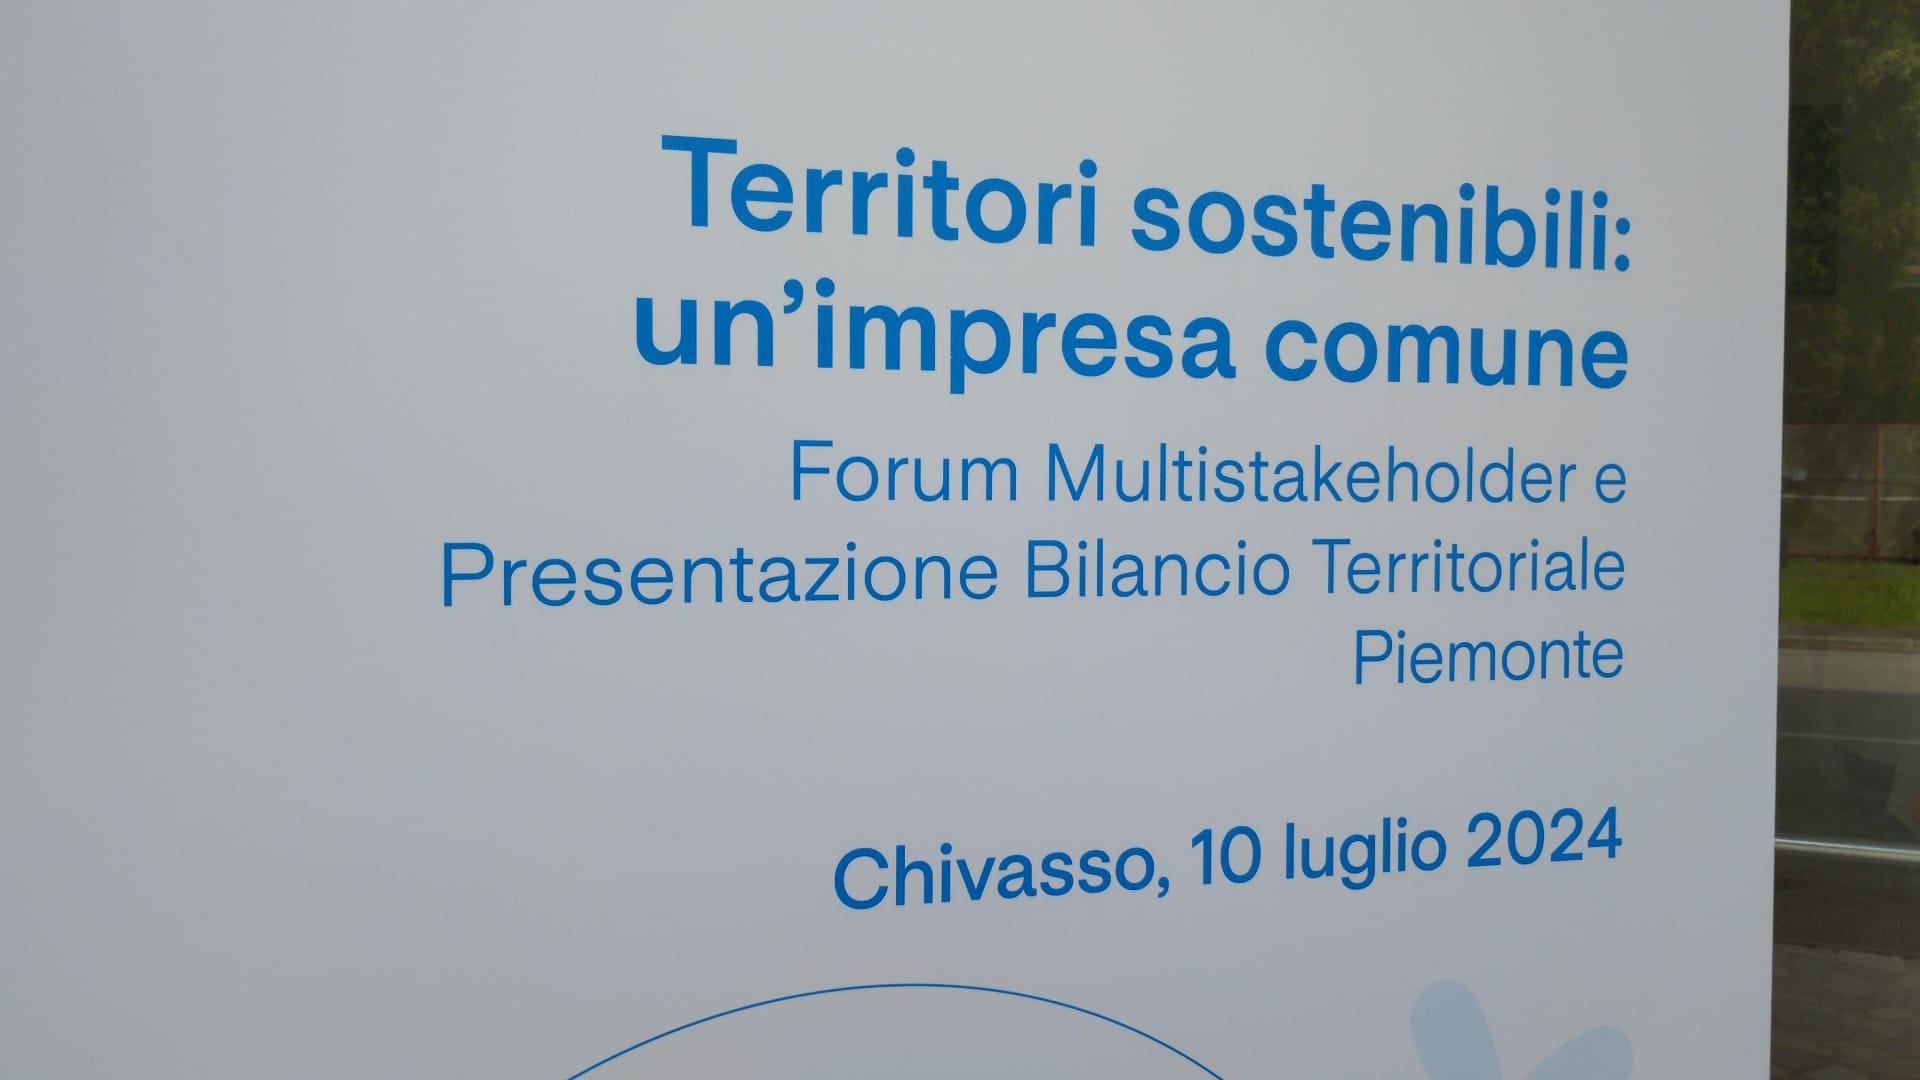 Piemonte - A2A: oltre 160 mln il valore economico generato nel 2023 (+50%)